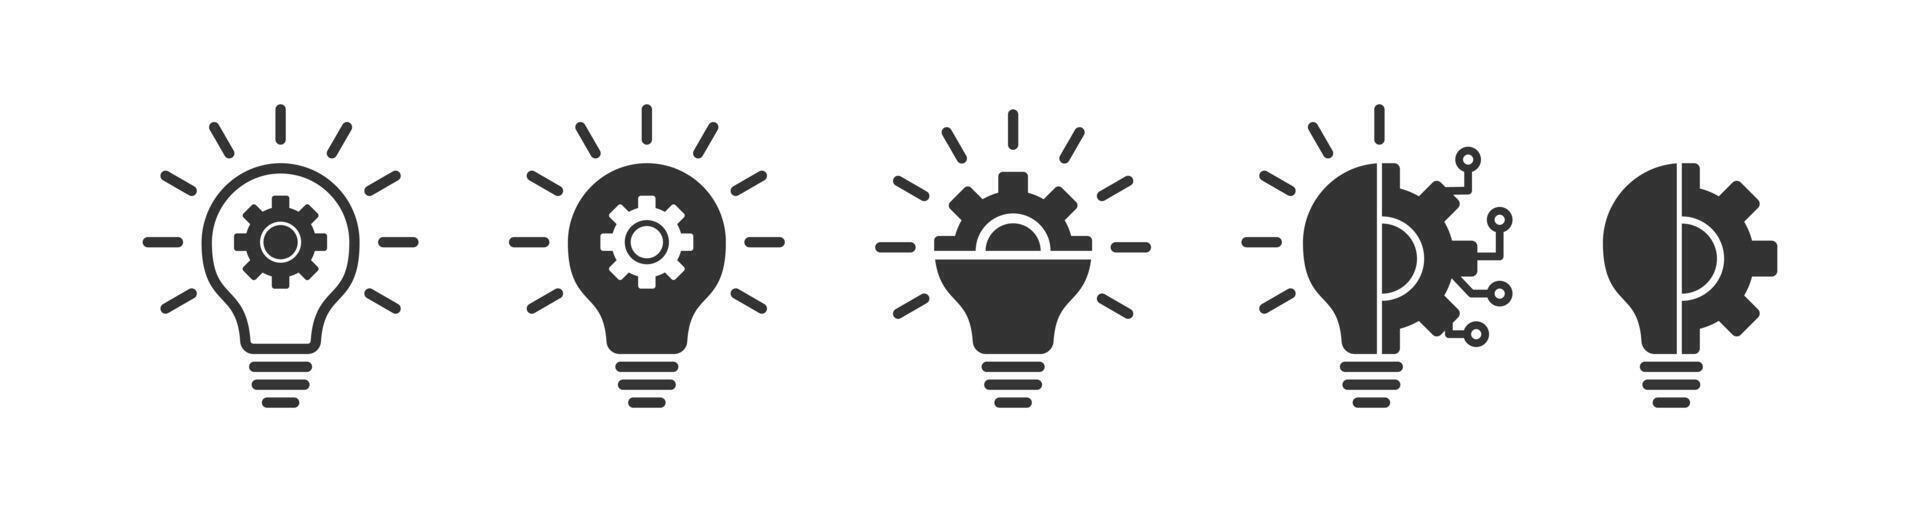 idée équipement ampoule. innovation roue dentée lampe. La technologie affaires créatif. vecteur illustration.